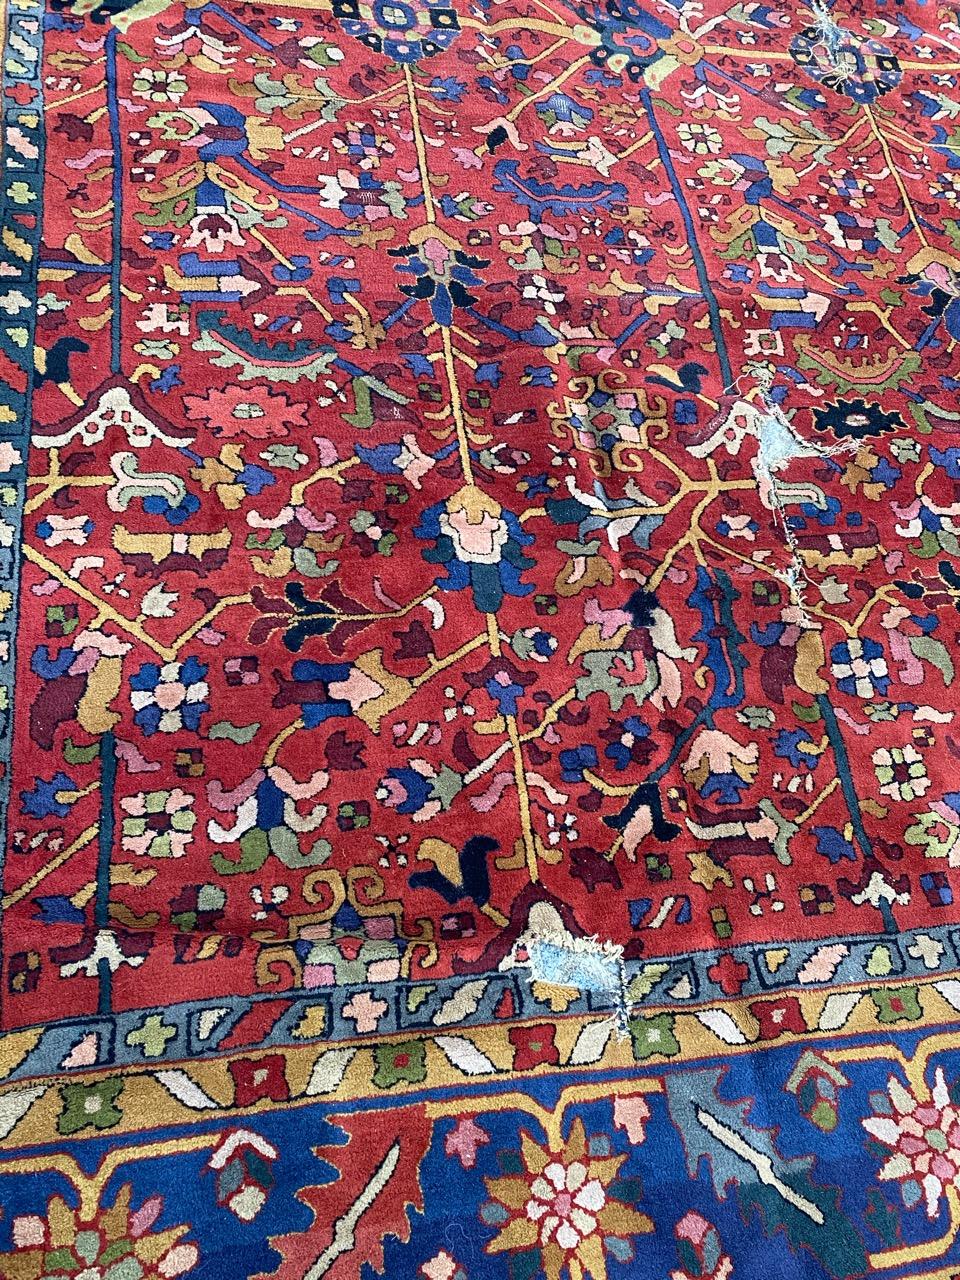 Joli grand tapis Janus français en détresse avec de jolis motifs décoratifs persans stylisés et de belles couleurs, entièrement réalisé à la main selon la méthode du 